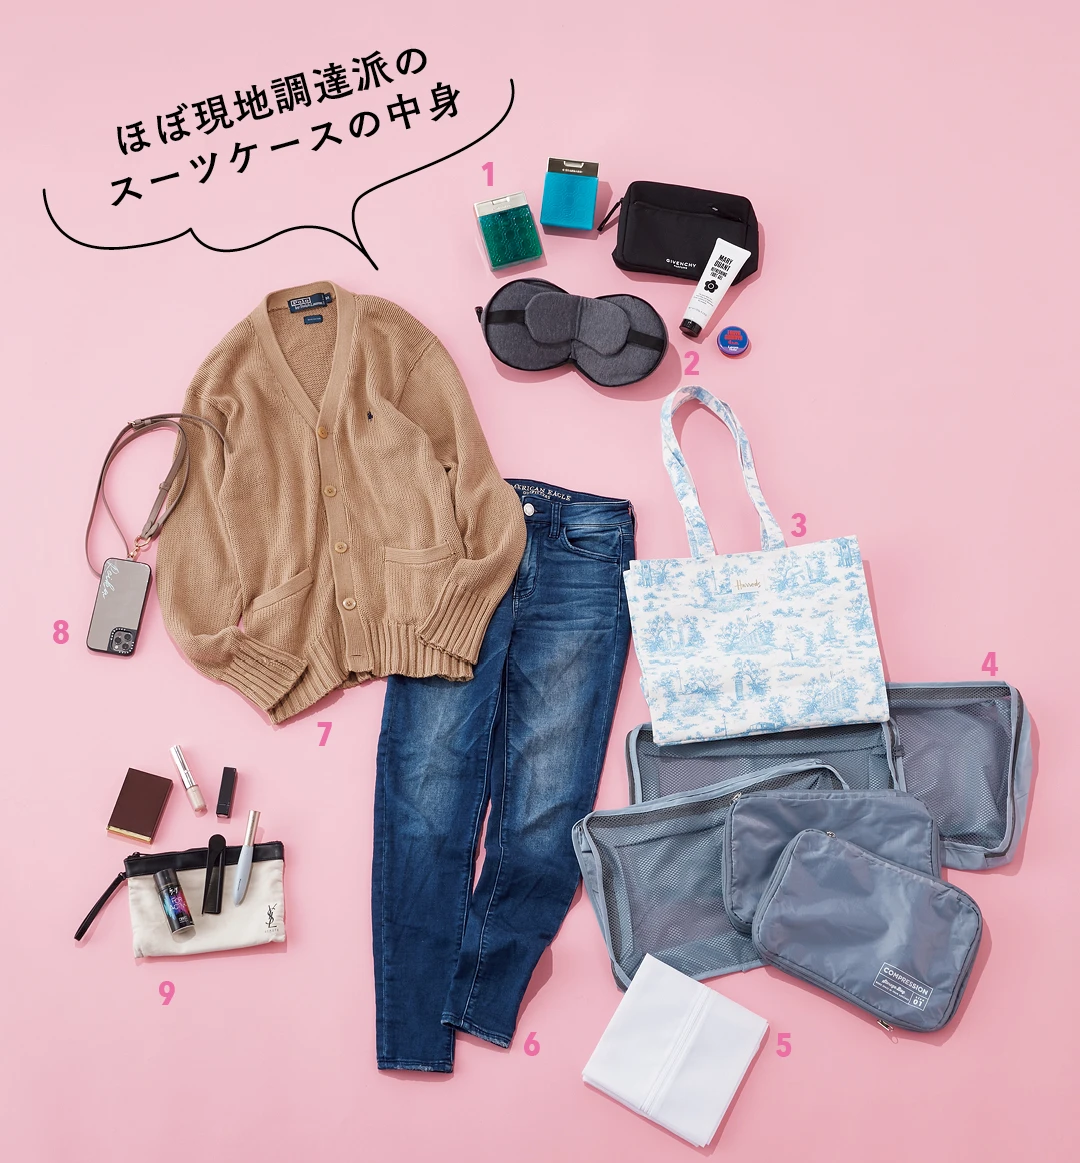 大学3年生 有賀怜香さんのスーツケースの中身メインカット-ほぼ現地調達派のスーツケースの中身